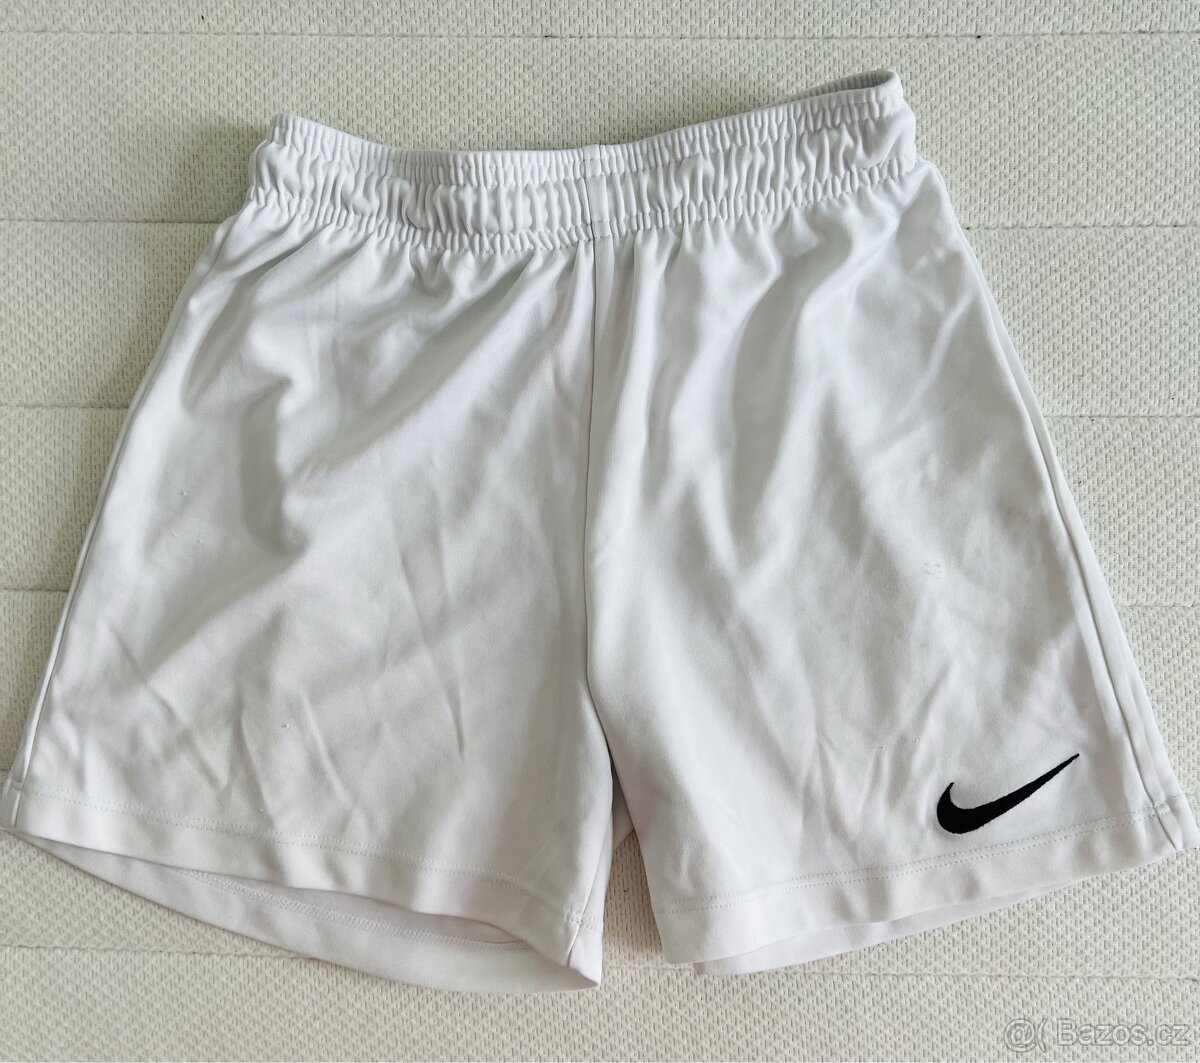 Šortky Nike, vel. S (128-137 cm)